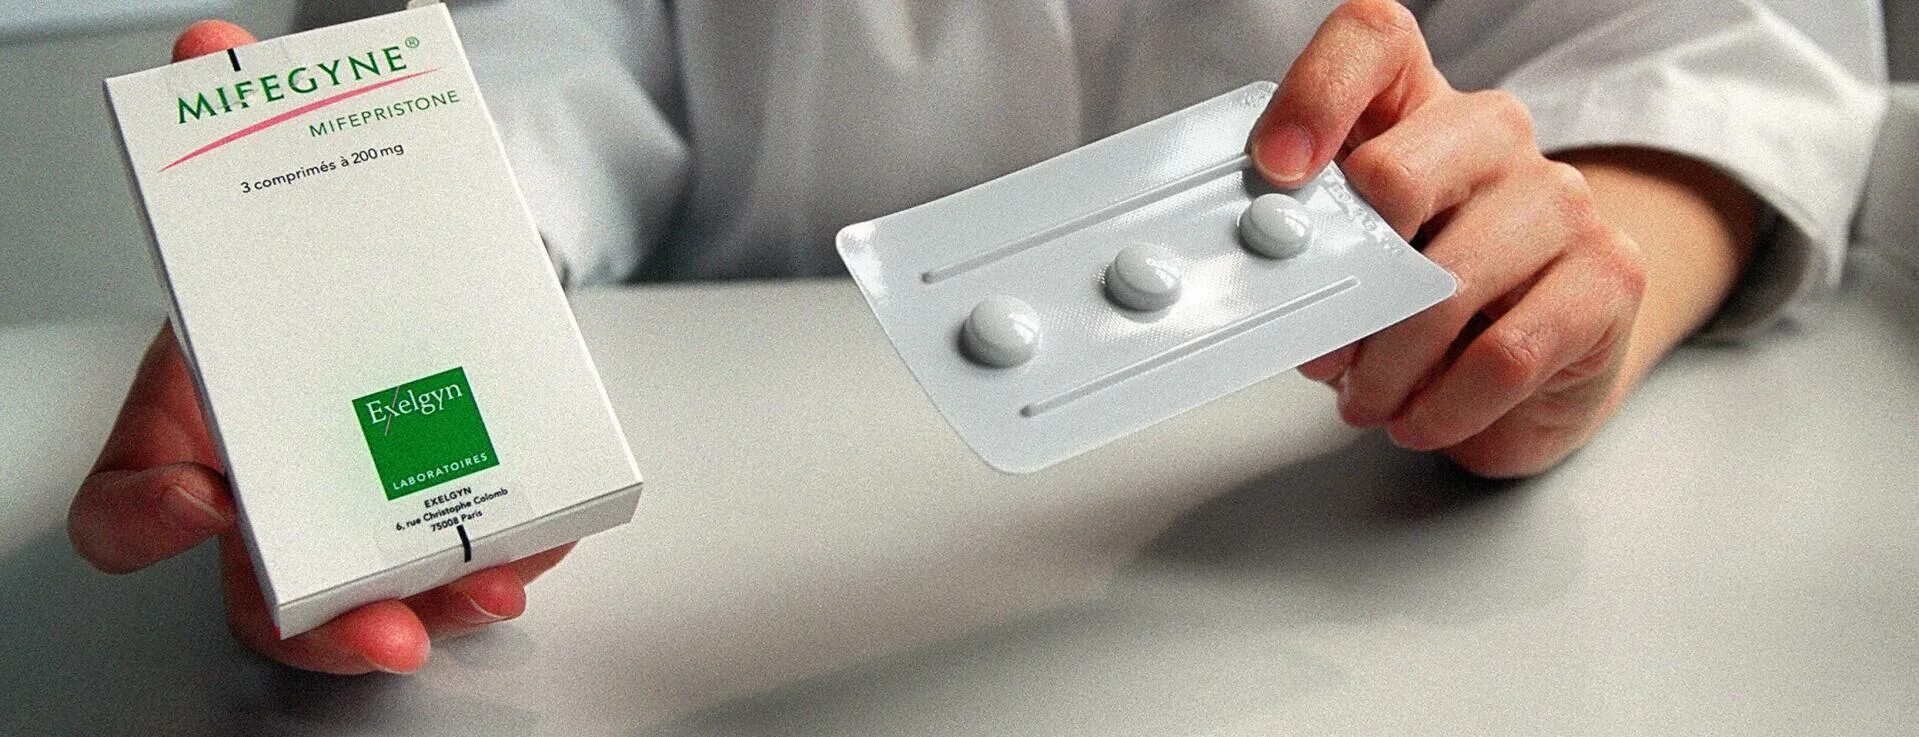 Таблетки от выкидыша. Таблетки для медикаментозного прерывания беременности. Таблетка для прерывания беременности на ранних сроках. Медикаментозный выкидыш.